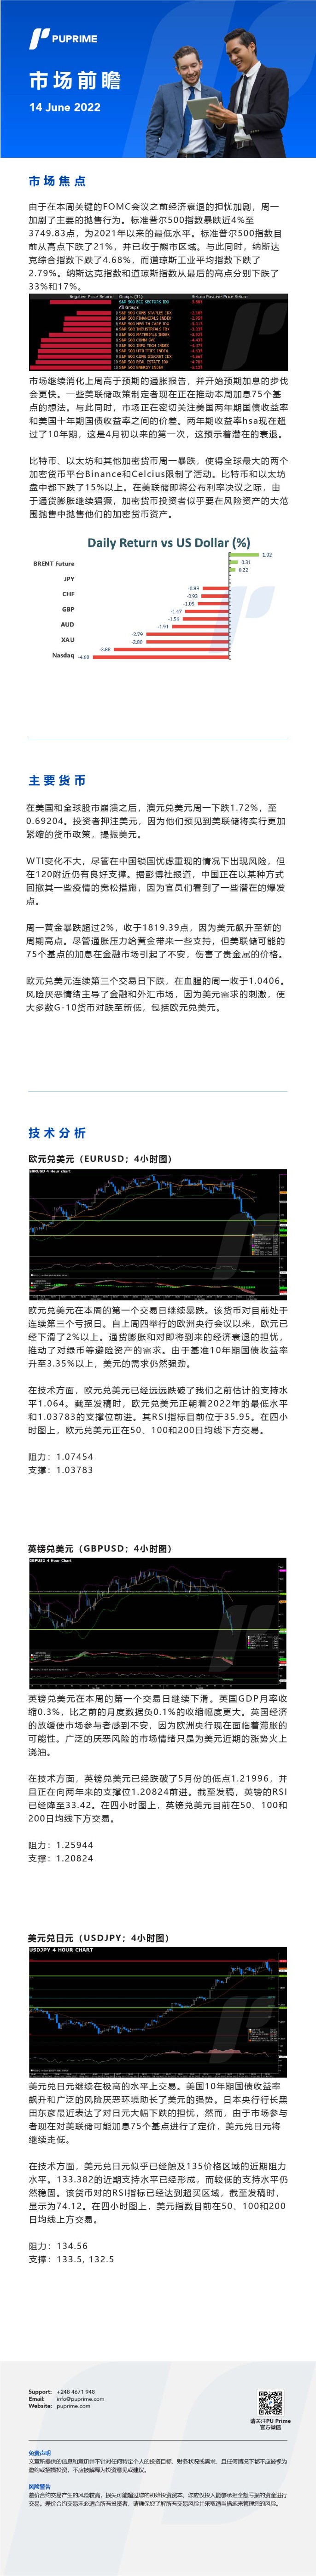 14062022 Daily Market Analysis__CHN.jpg